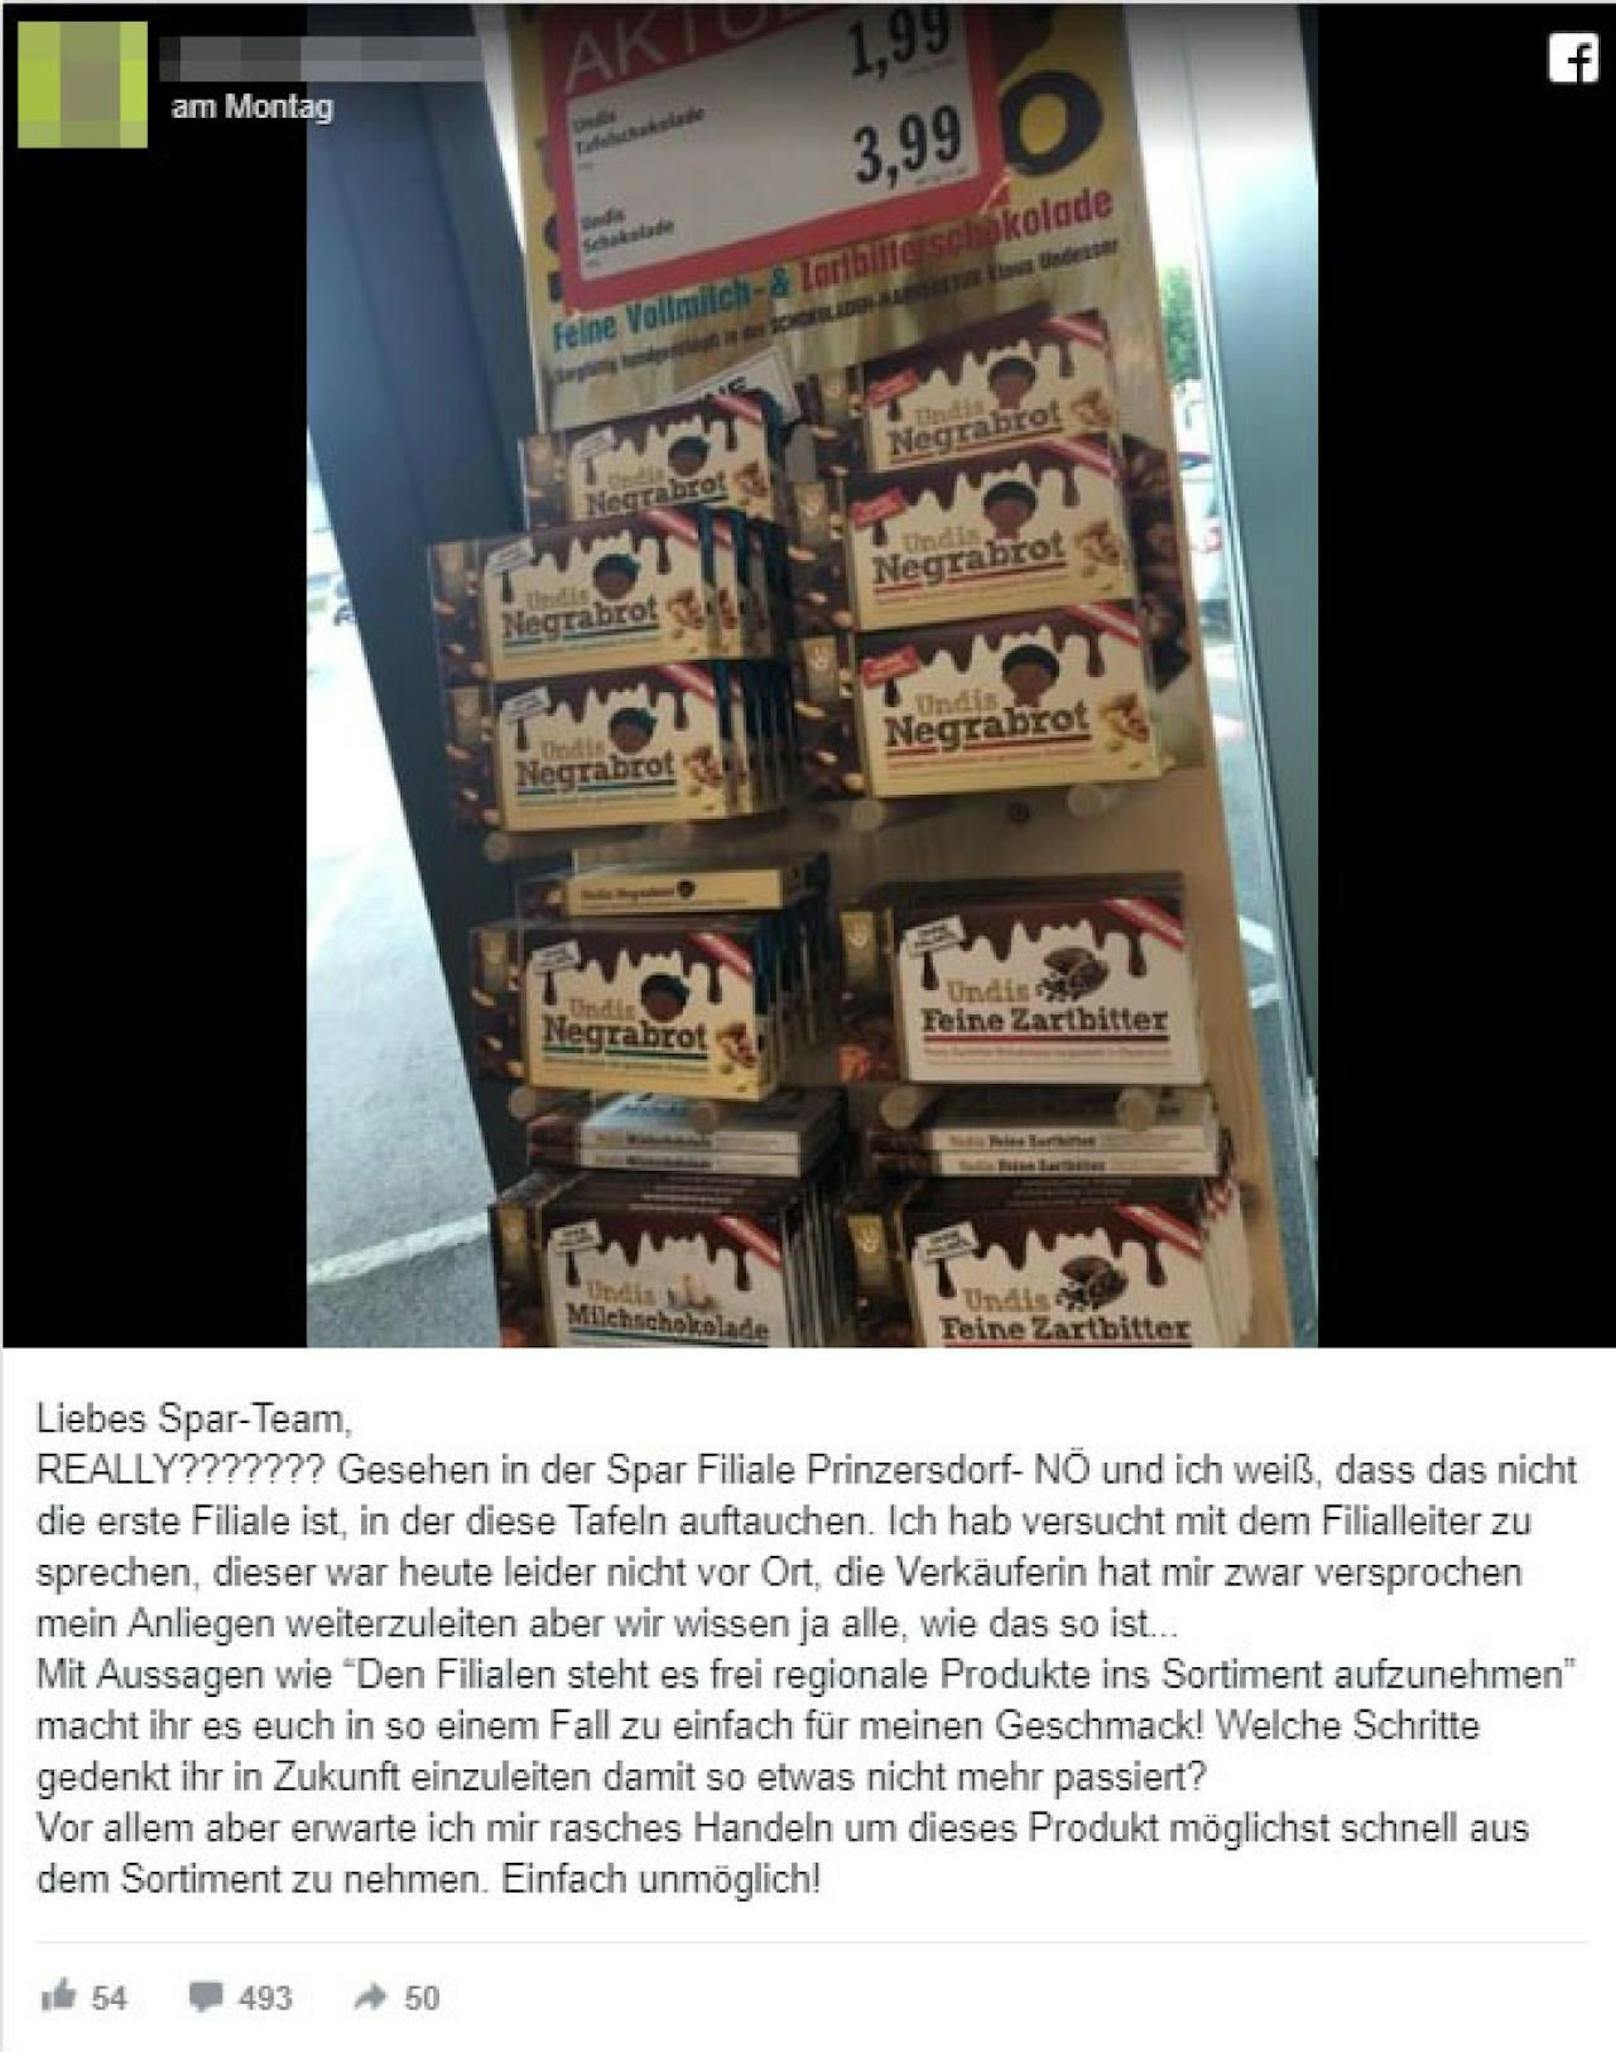 Rassismus-Eklat um Schokolade in Supermarkt